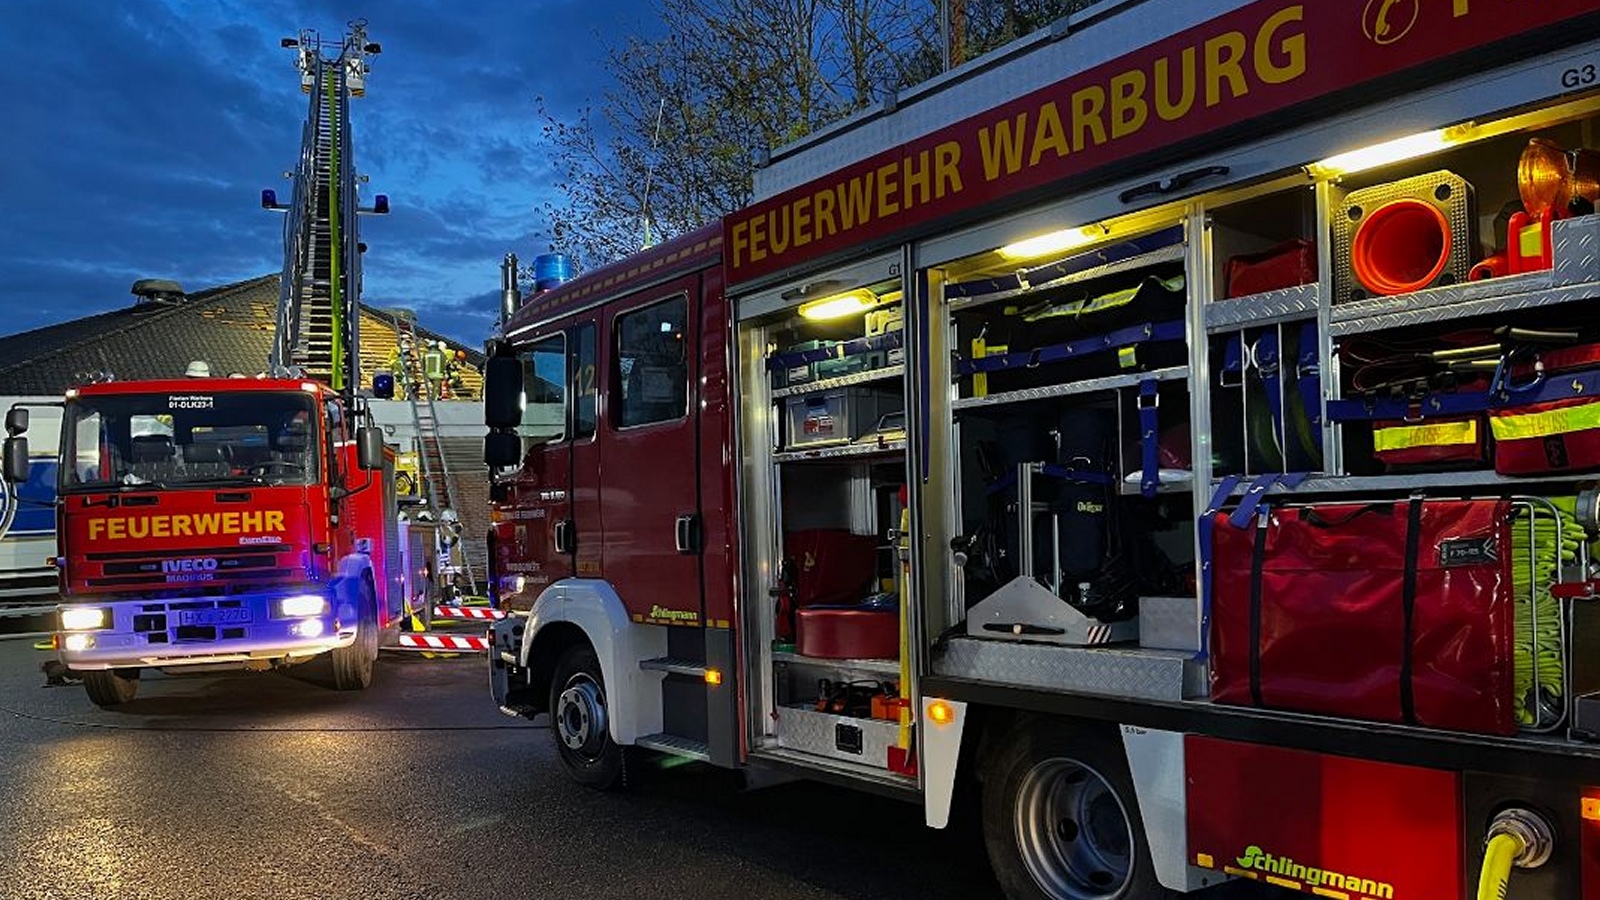 Nach dem Feuer in Nörde: Findet das Stadtschützenfest Warburg nun statt?